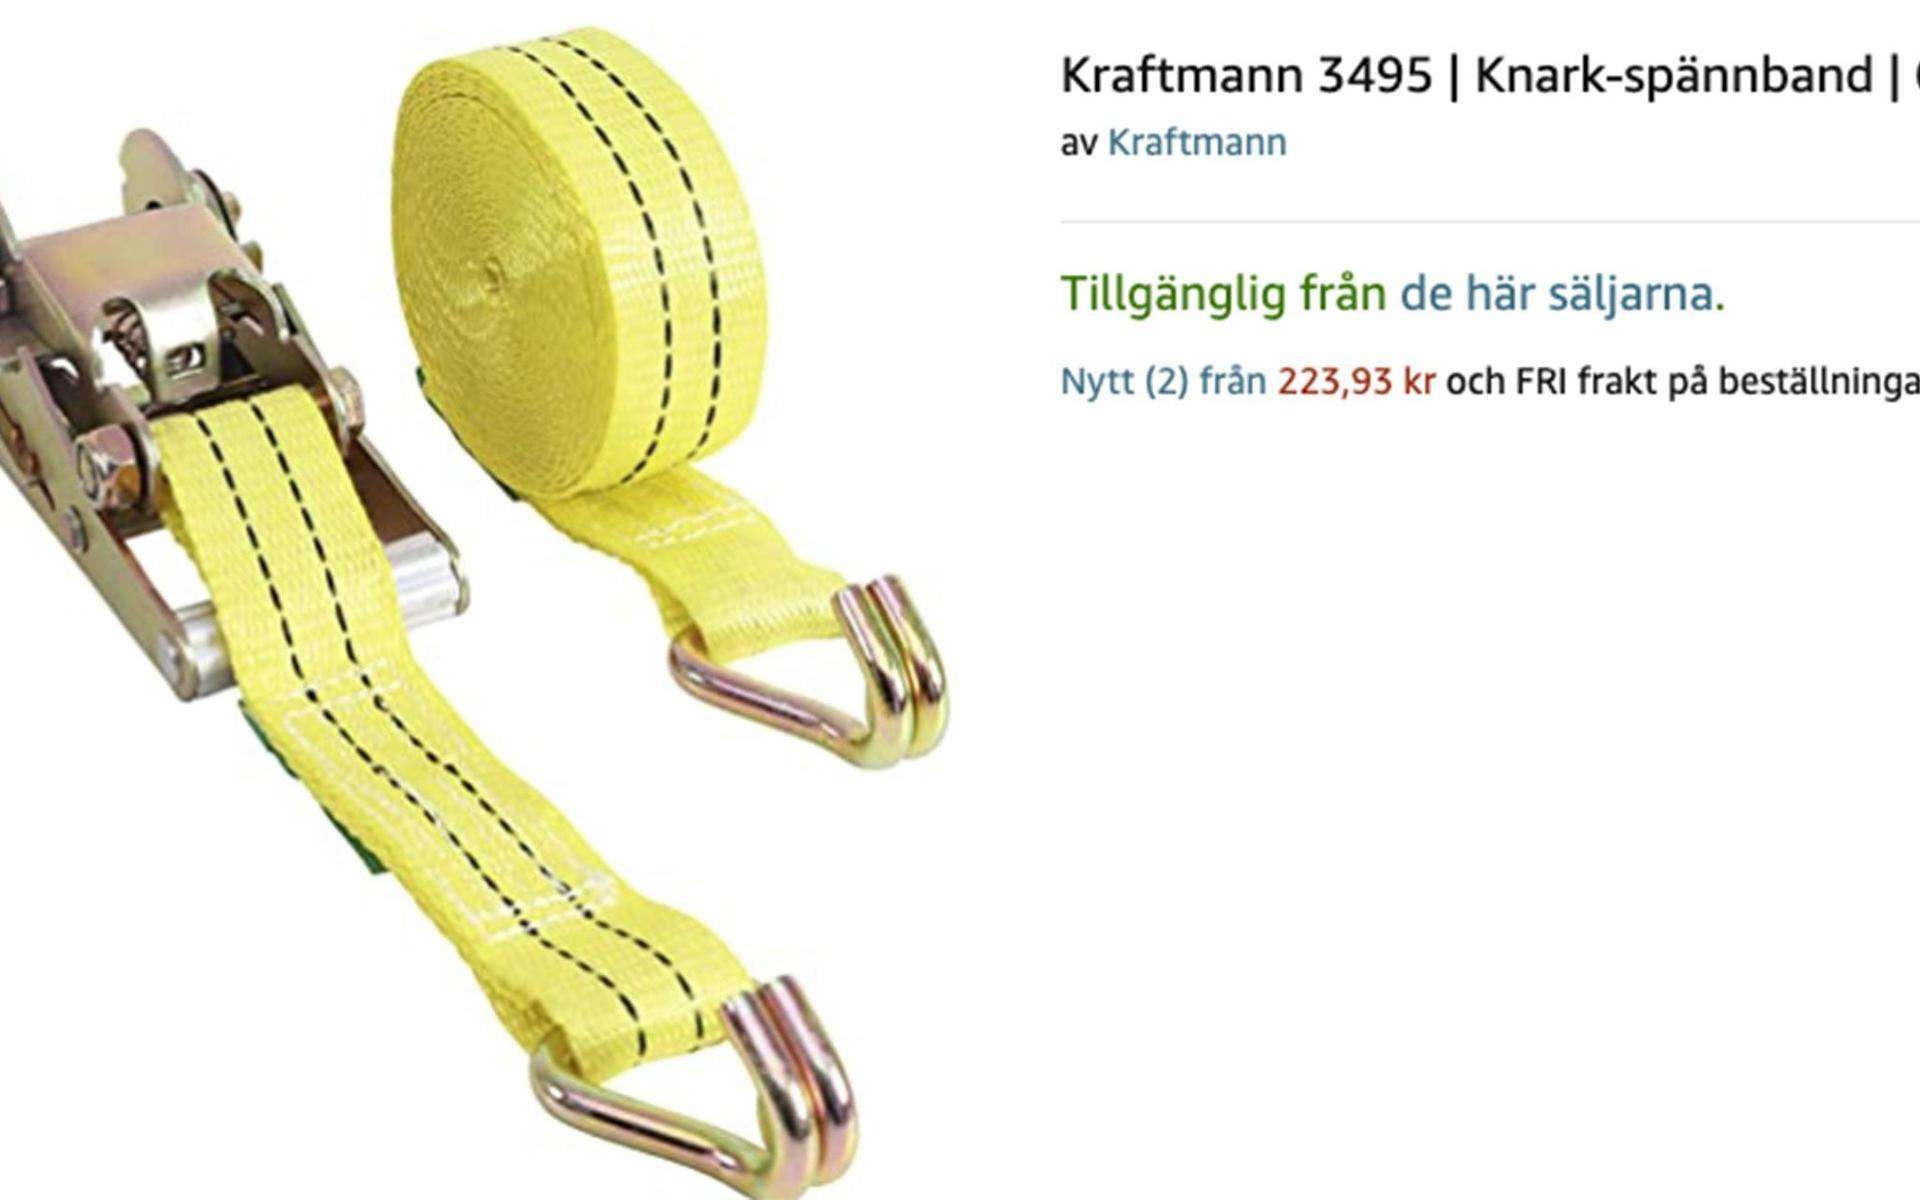 De svenska kunderna kan även slå till på ett ”knark-spännband”.